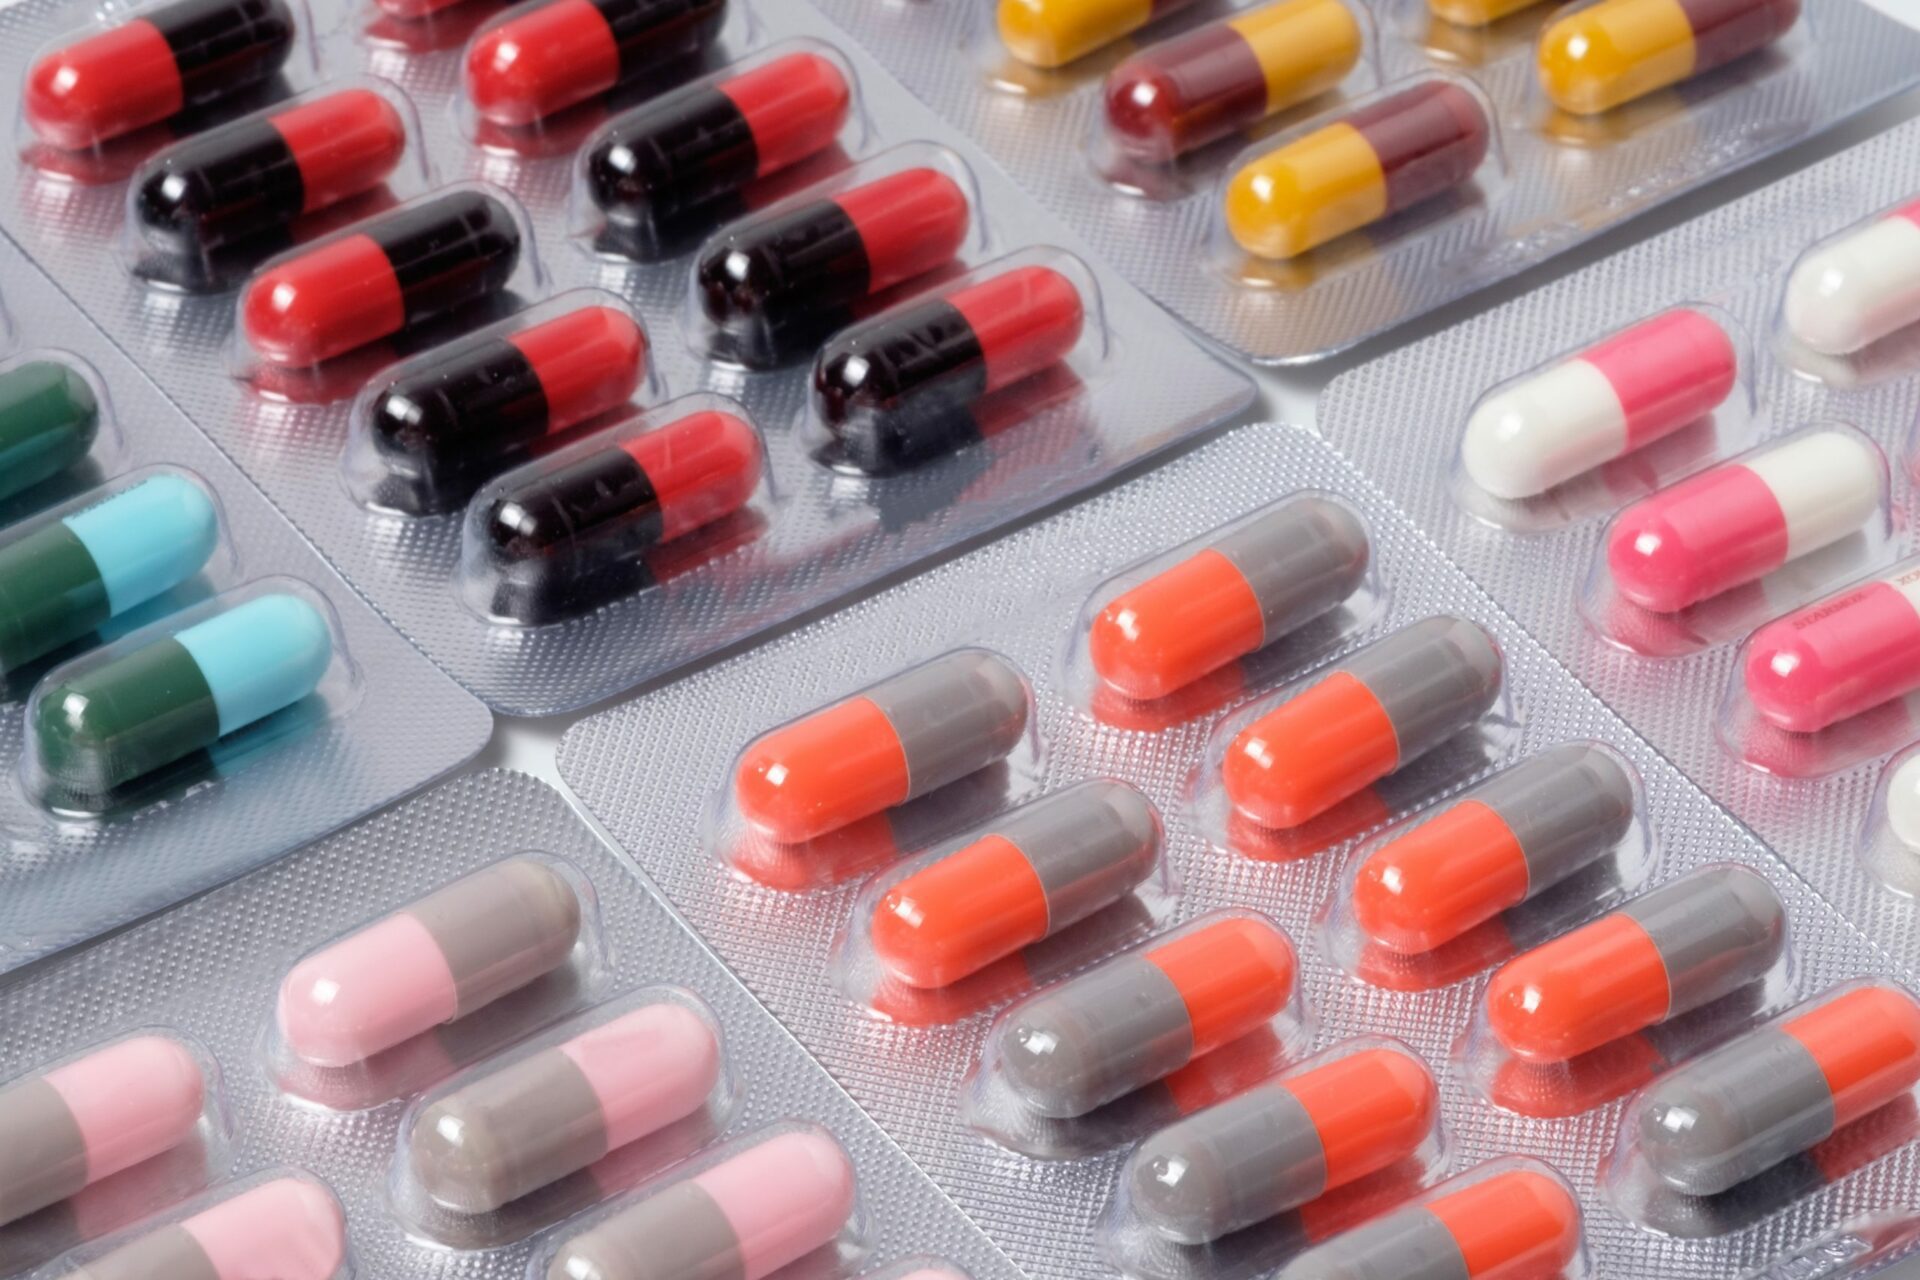 Ne pas prendre le cycle complet d'antibiotiques prescrit par votre médecin peut entraîner une augmentation de la résistance aux antibiotiques.